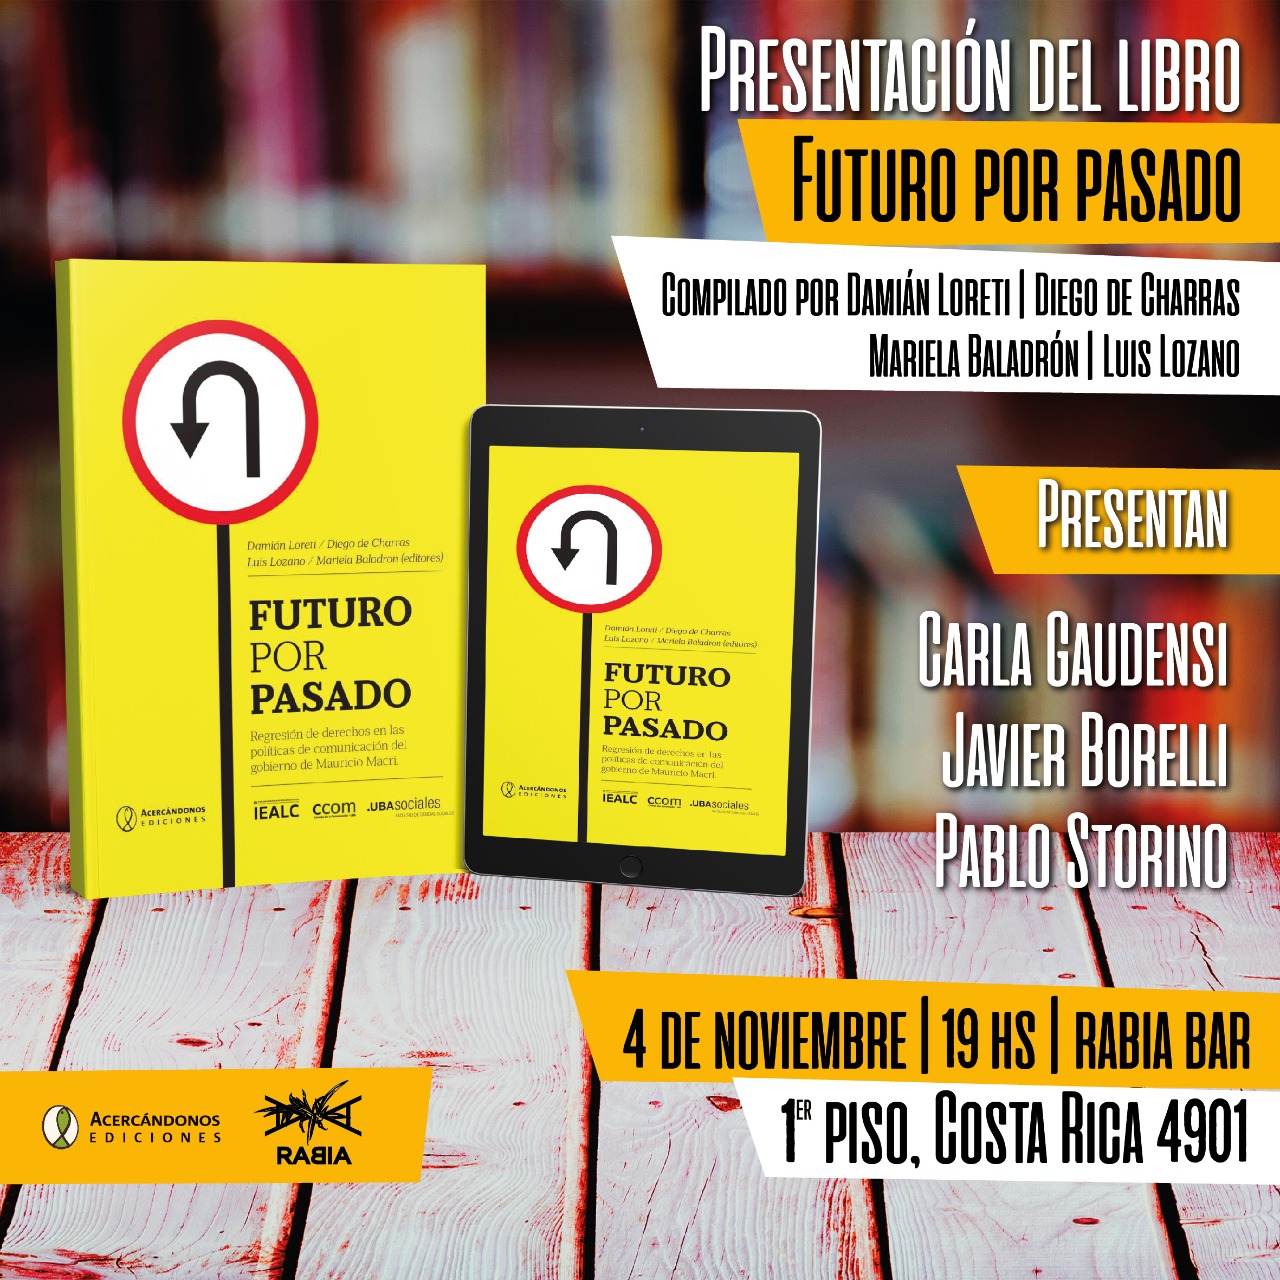 PABLO STORINO, SECRETARIO DE CULTURA DEL SATSAID, PARTICIPARÁ DEL LANZAMIENTO DEL LIBRO “FUTURO POR PASADO”